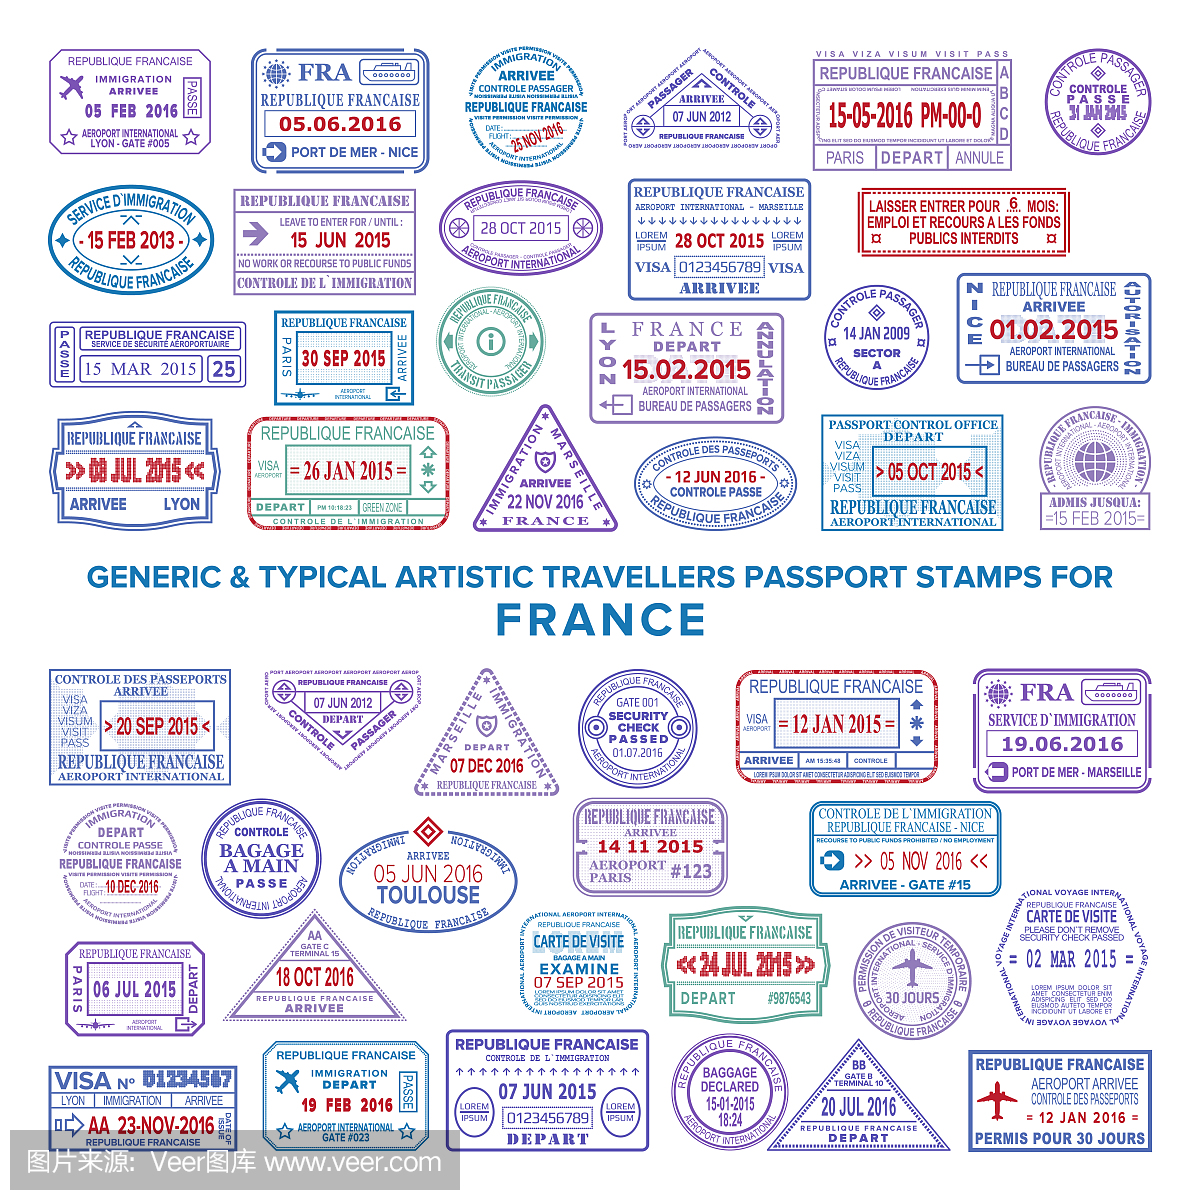 法国的自定义矢量典型艺术护照抵达和离境邮票